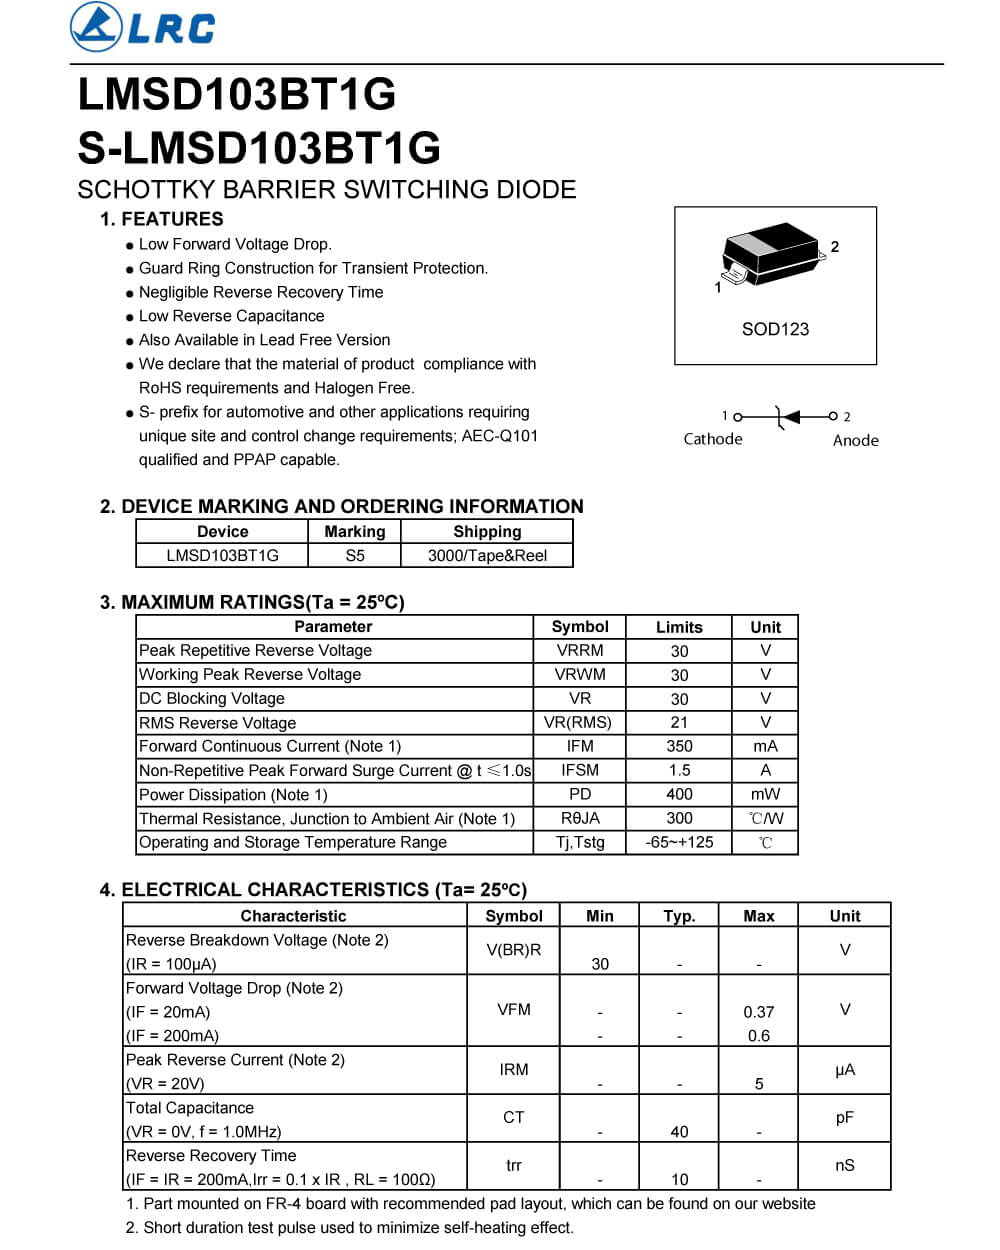 Details Of LMSD103BT1G